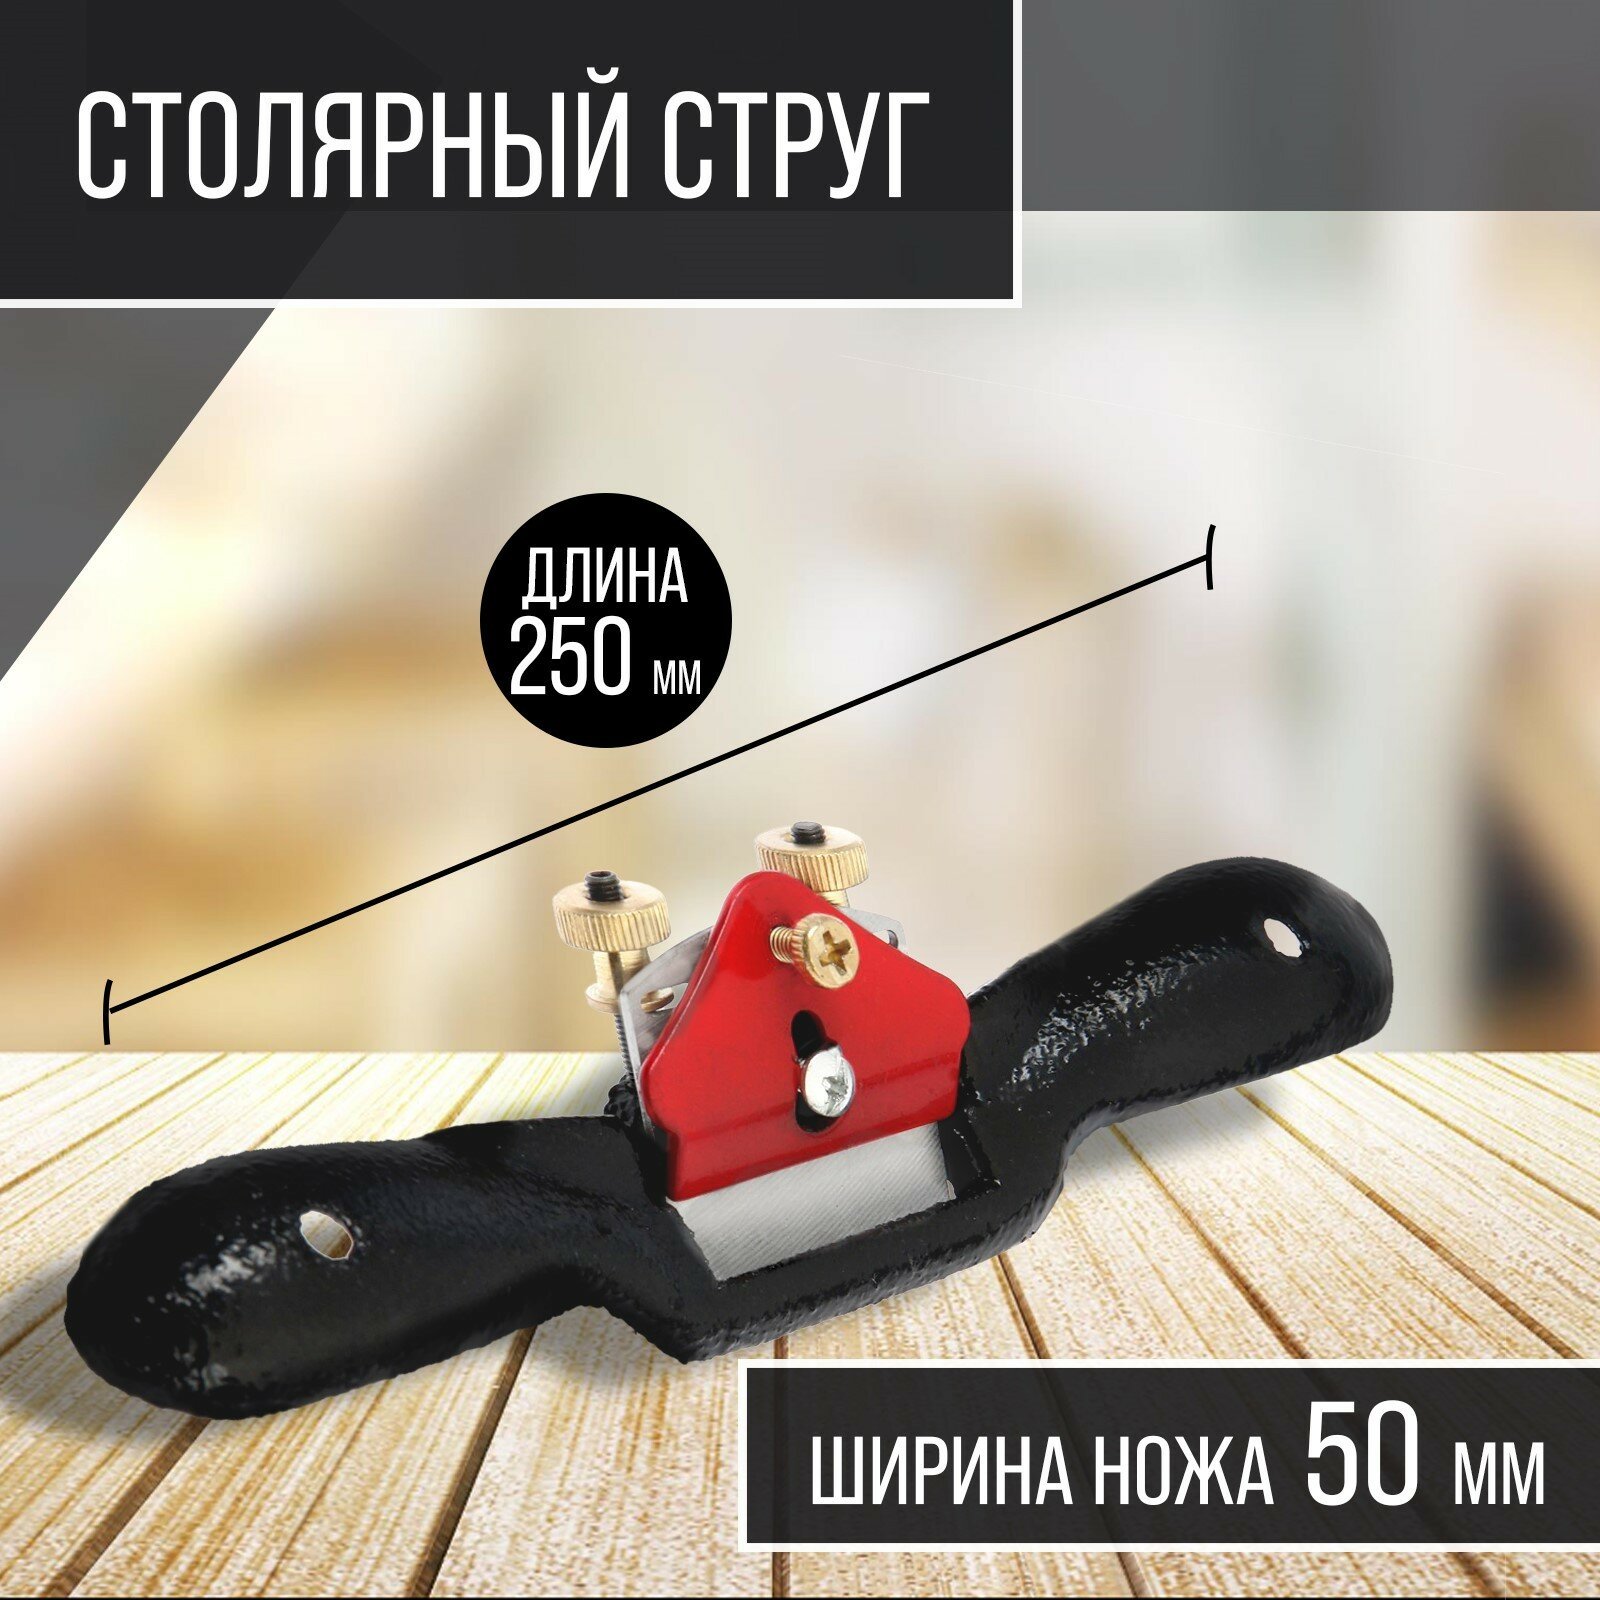 Столярный струг одинарный регулируемый нож 250 х 50 мм